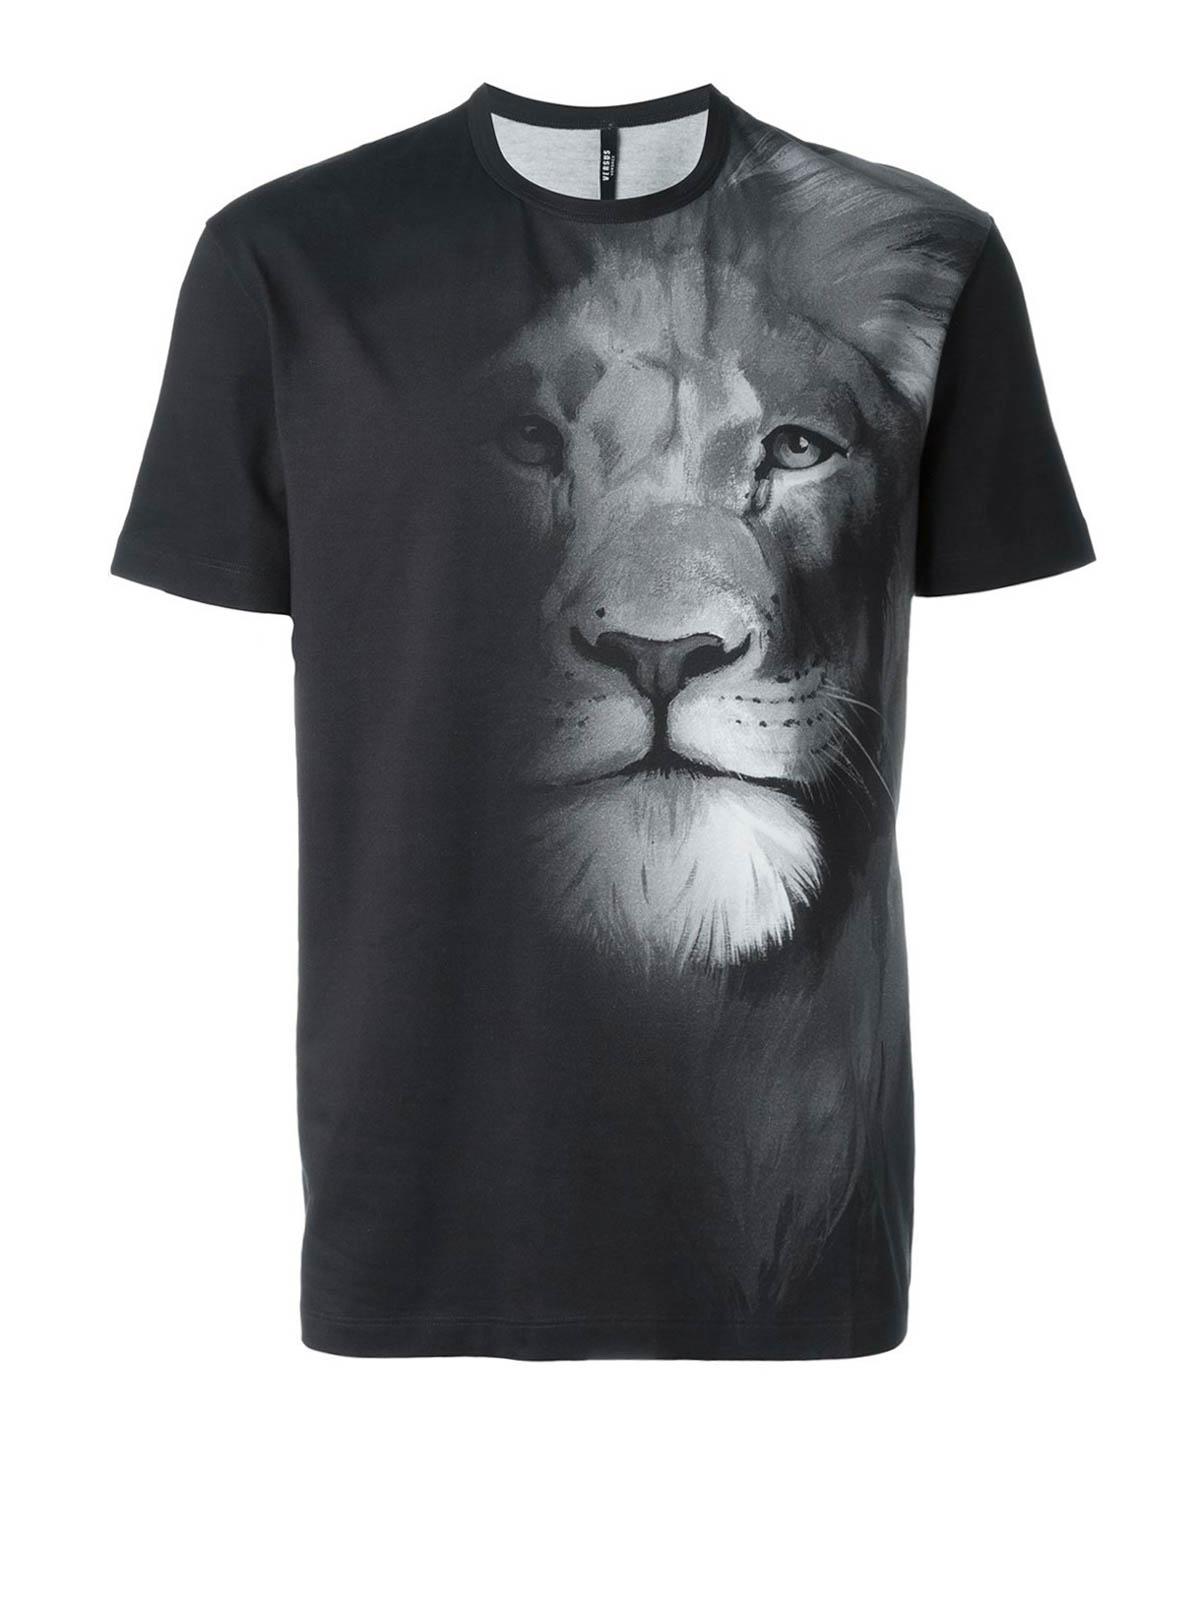 versace t shirt lion